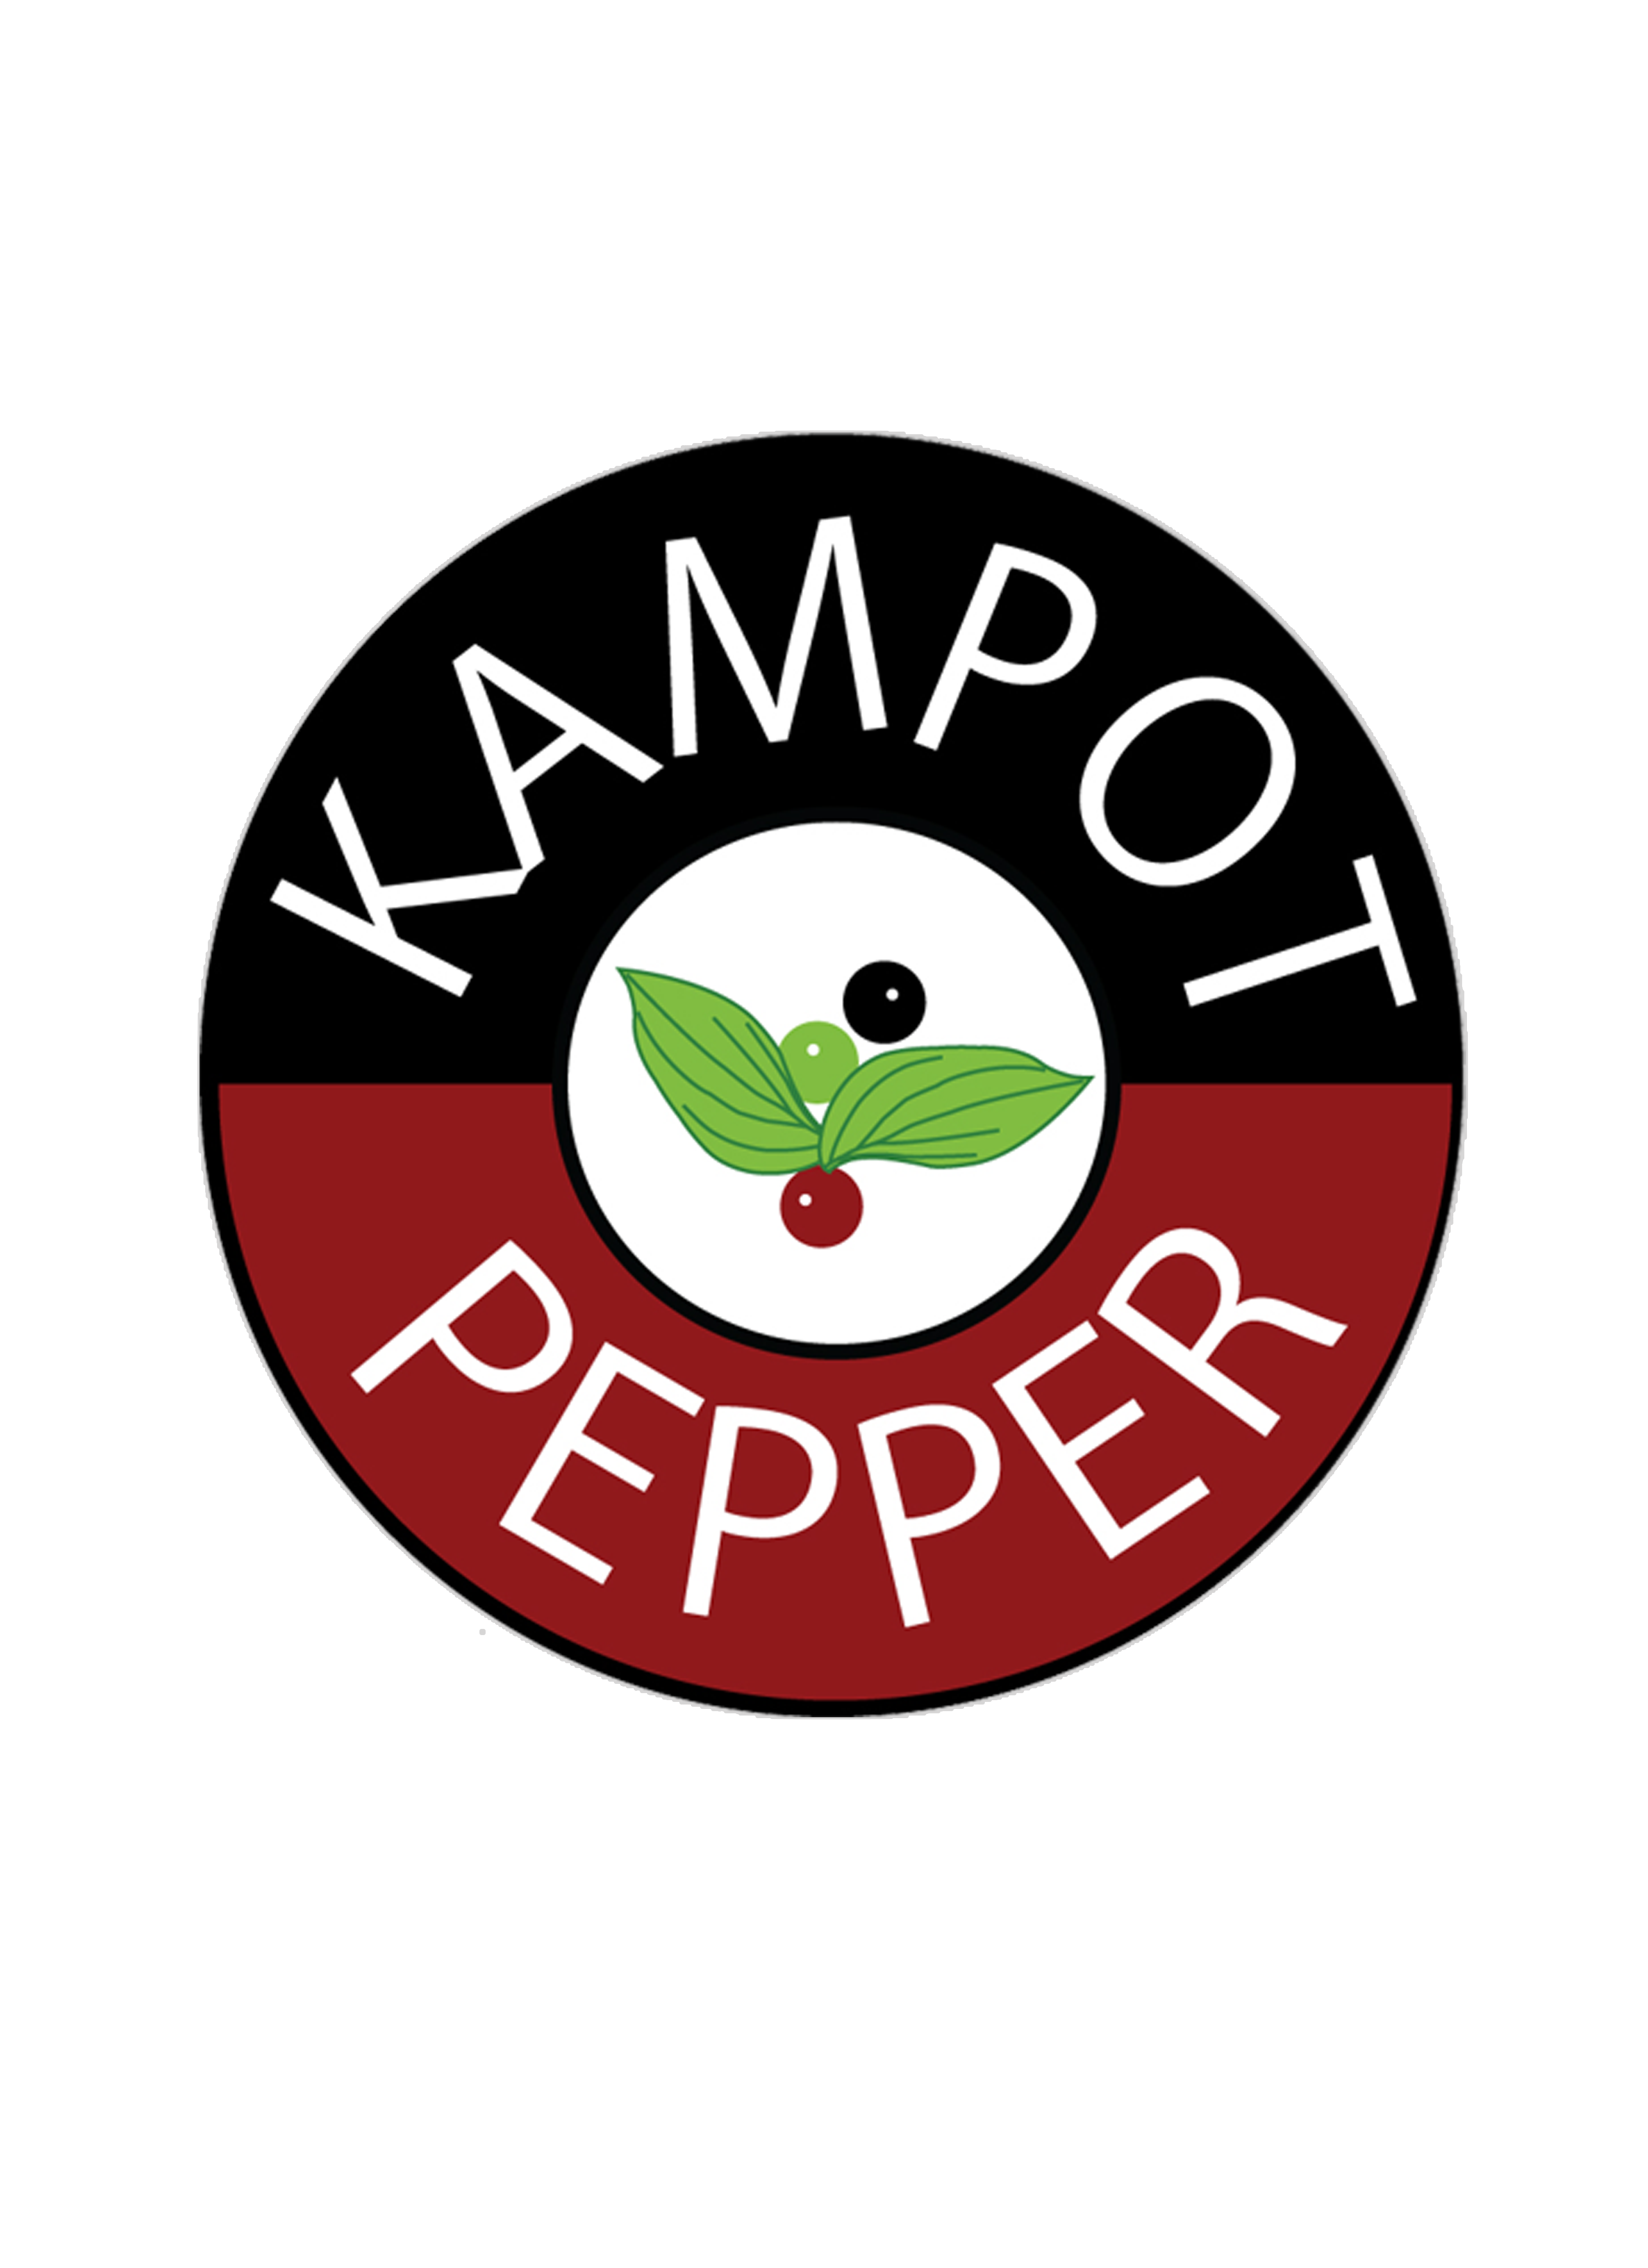 Kampot Pepper. Tabiy Kampot logo. Kampot Mix. Good pepper